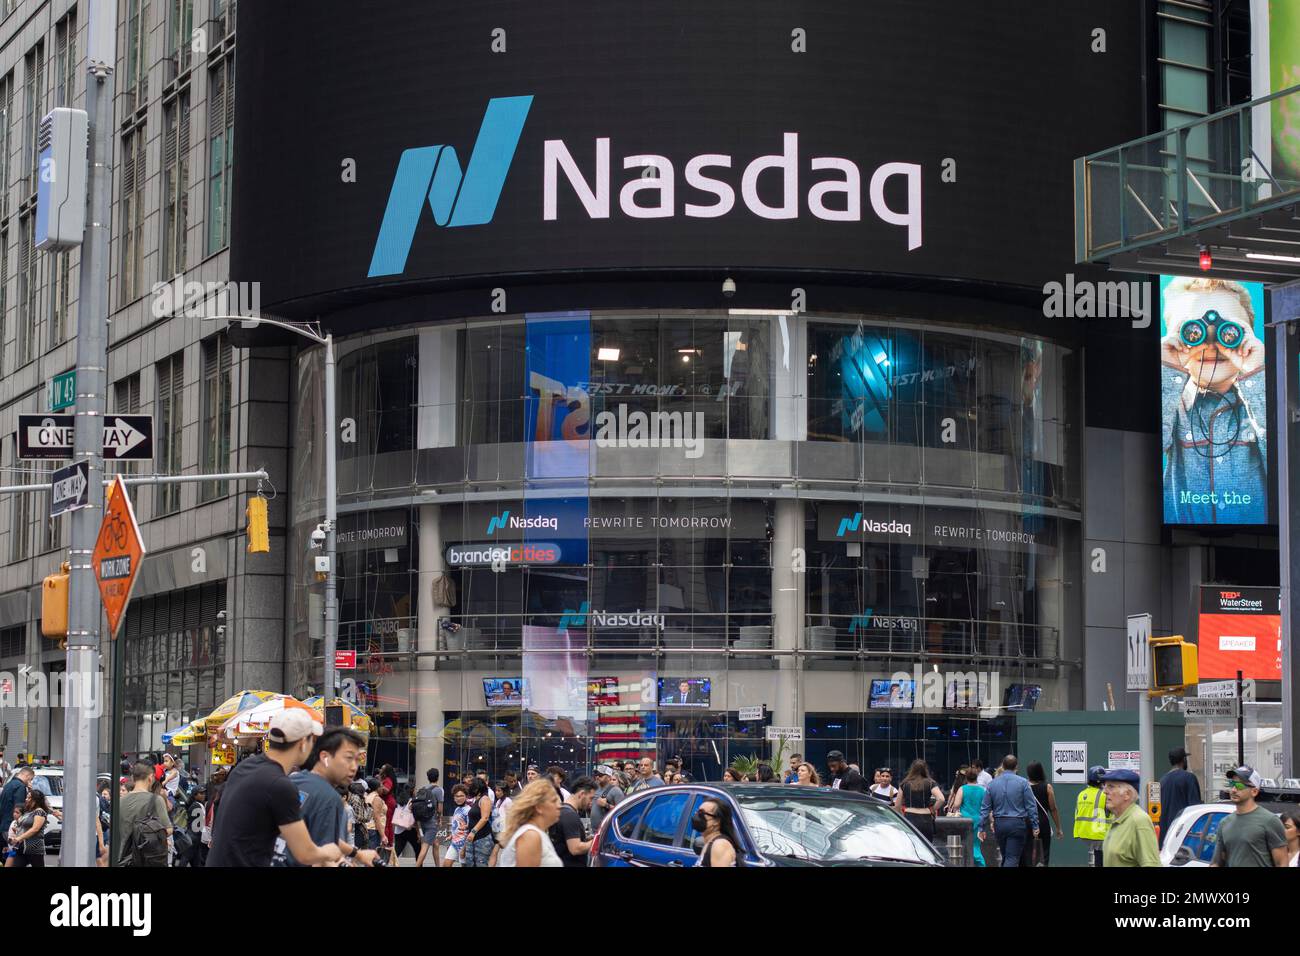 Vue de face du Nasdaq MarketSite, qui occupe le coin nord-ouest au pied du bâtiment 4 Times Square à Midtown Manhattan, New York ... Banque D'Images